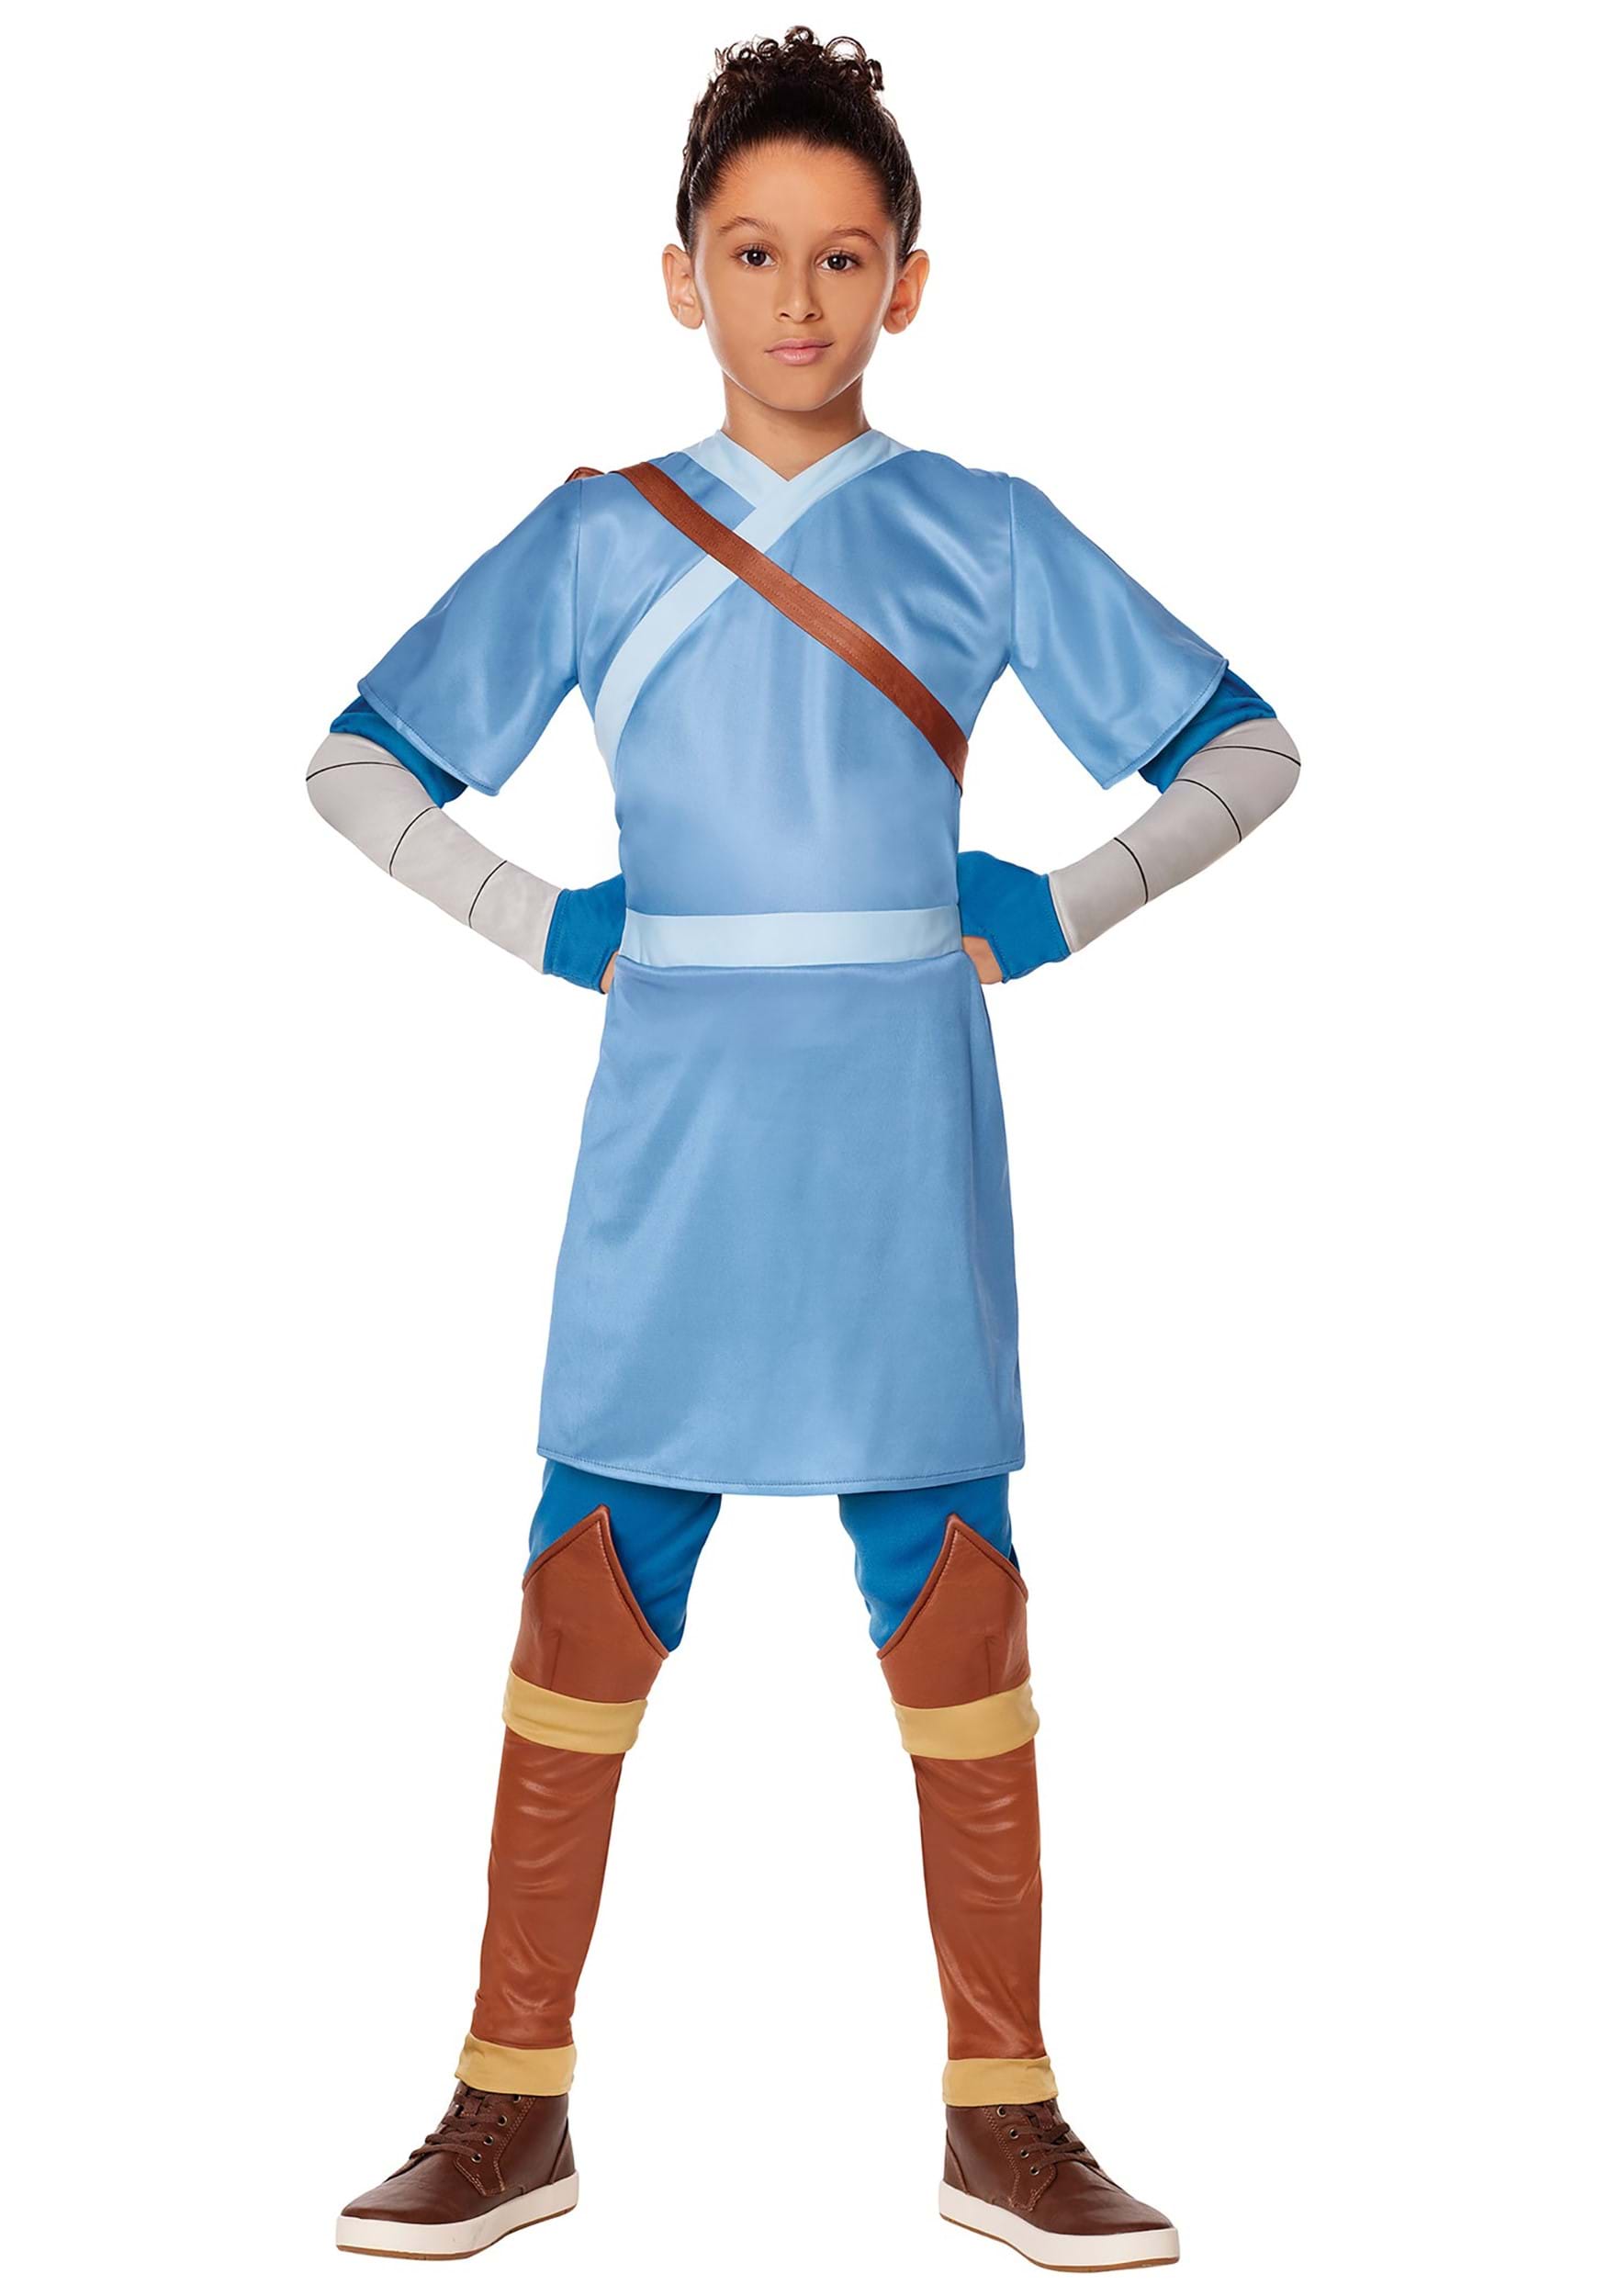 Avatar the Last Airbender Sokka Kids Costume